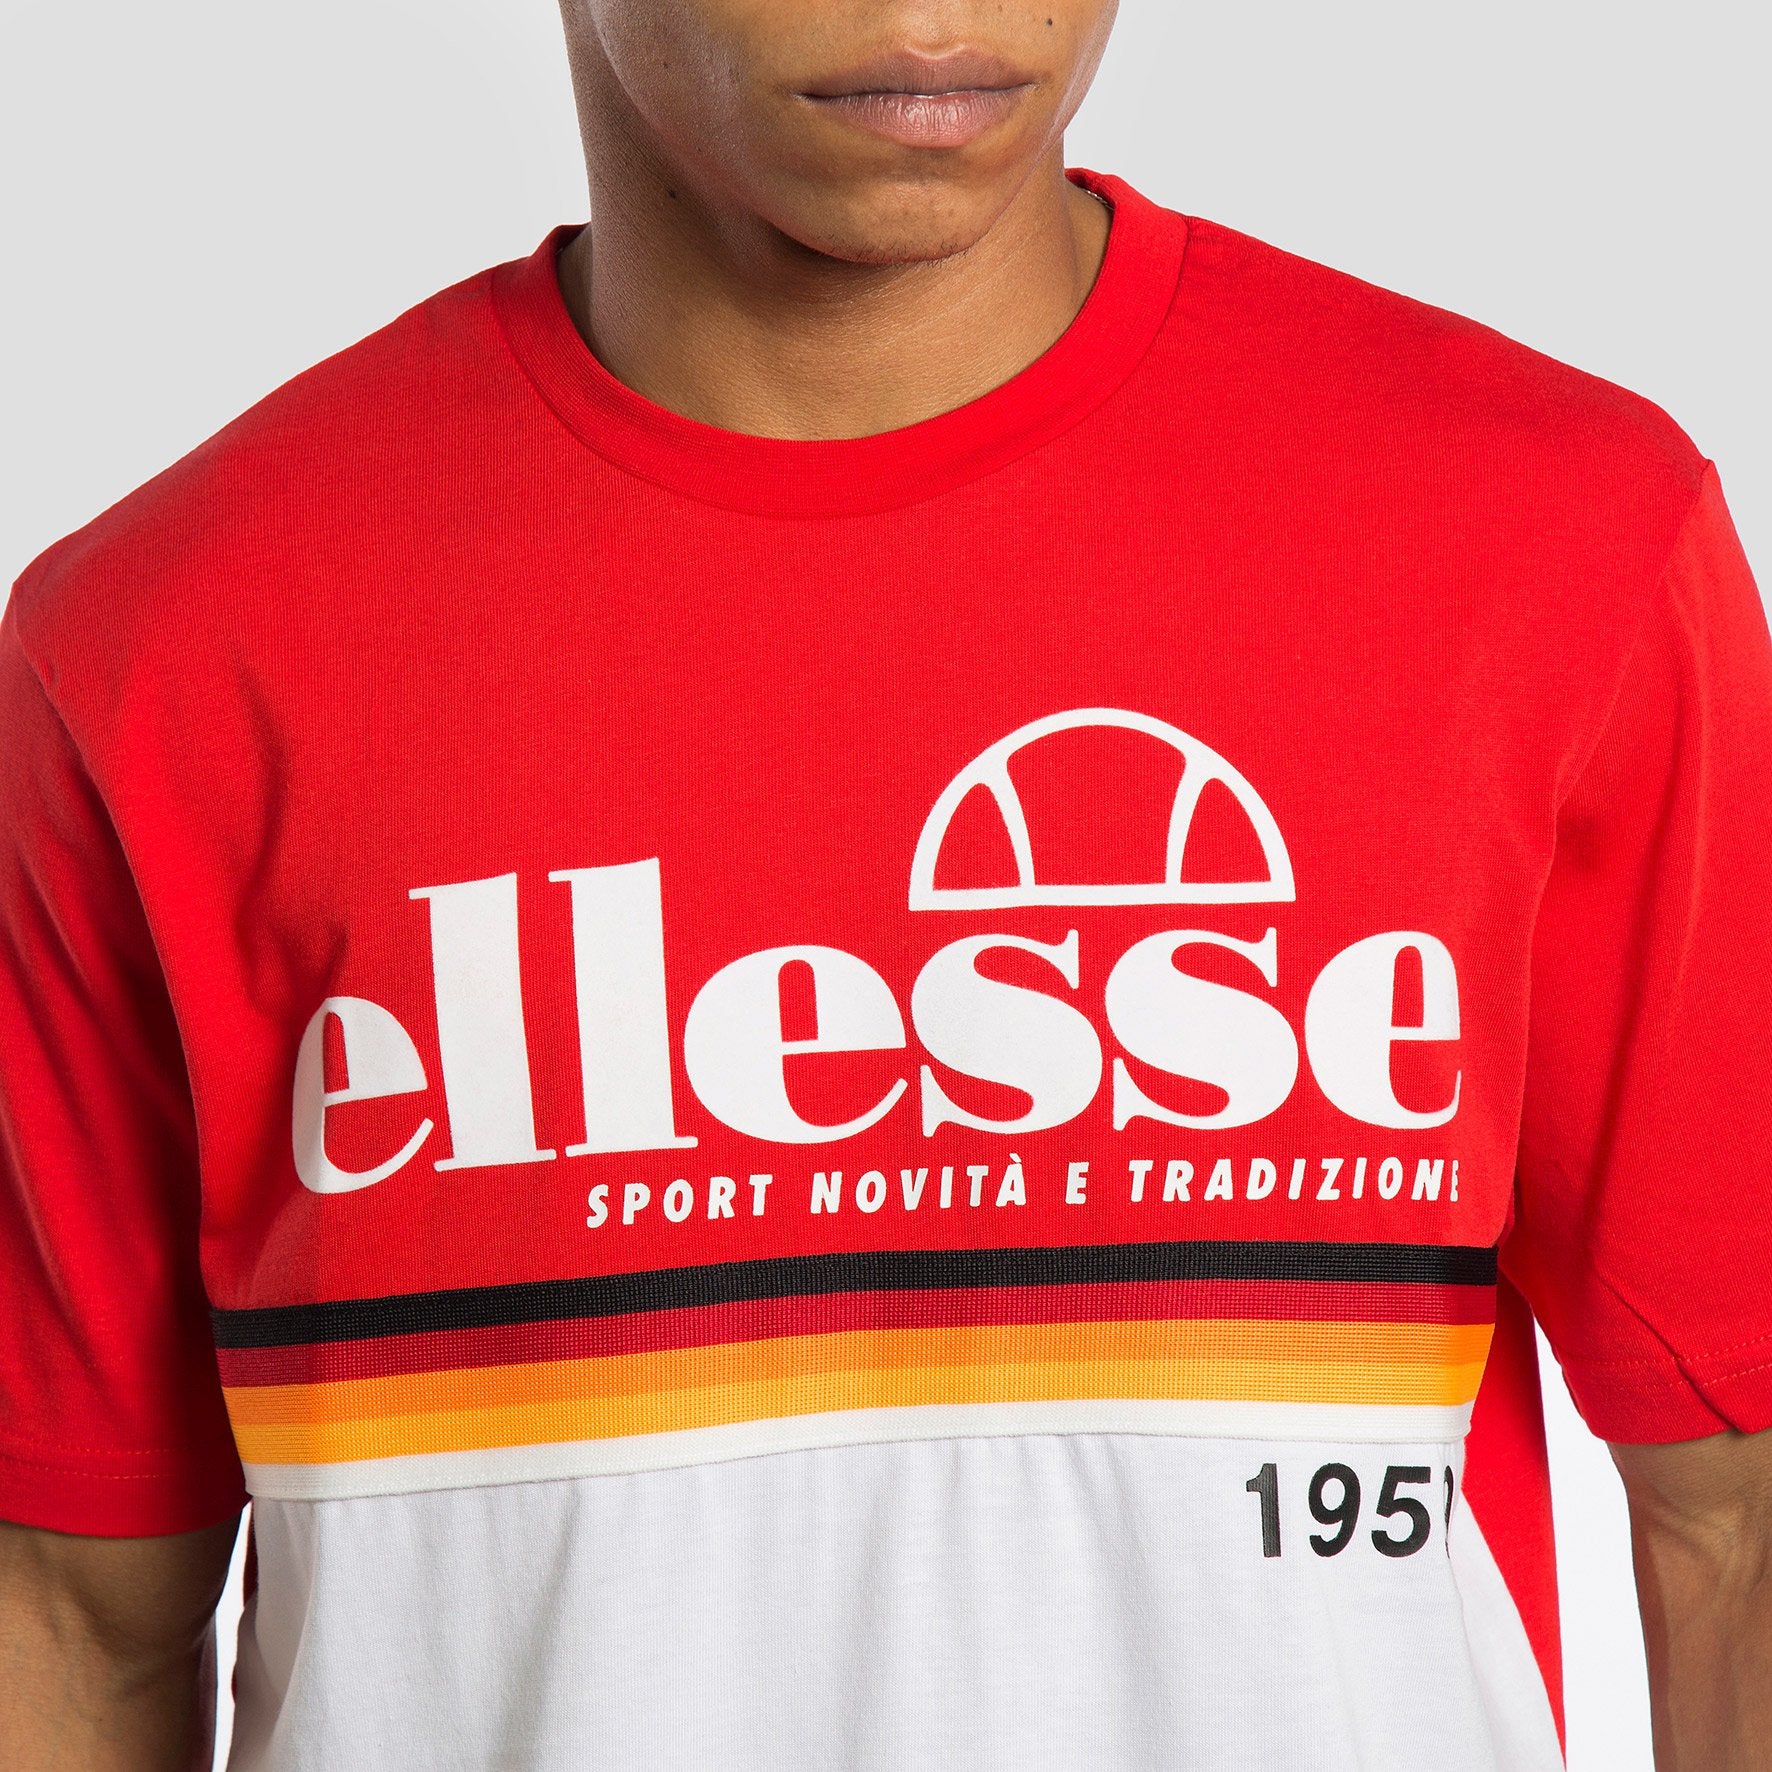 Ellesse Camiseta Brescia Red - SHD08104 - Colección Chico